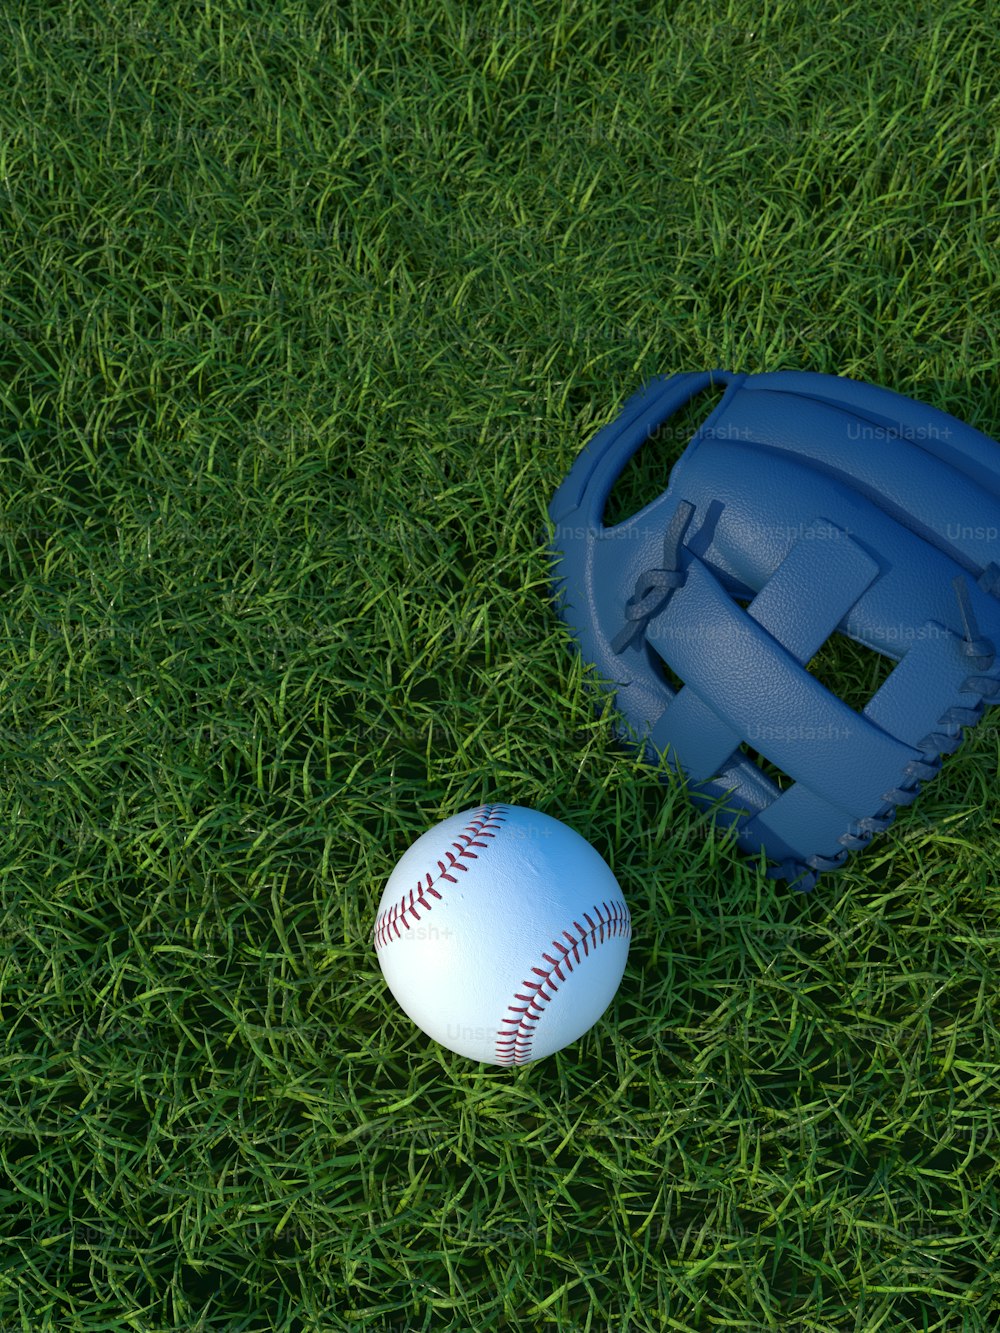 a baseball and a catchers mitt on the grass